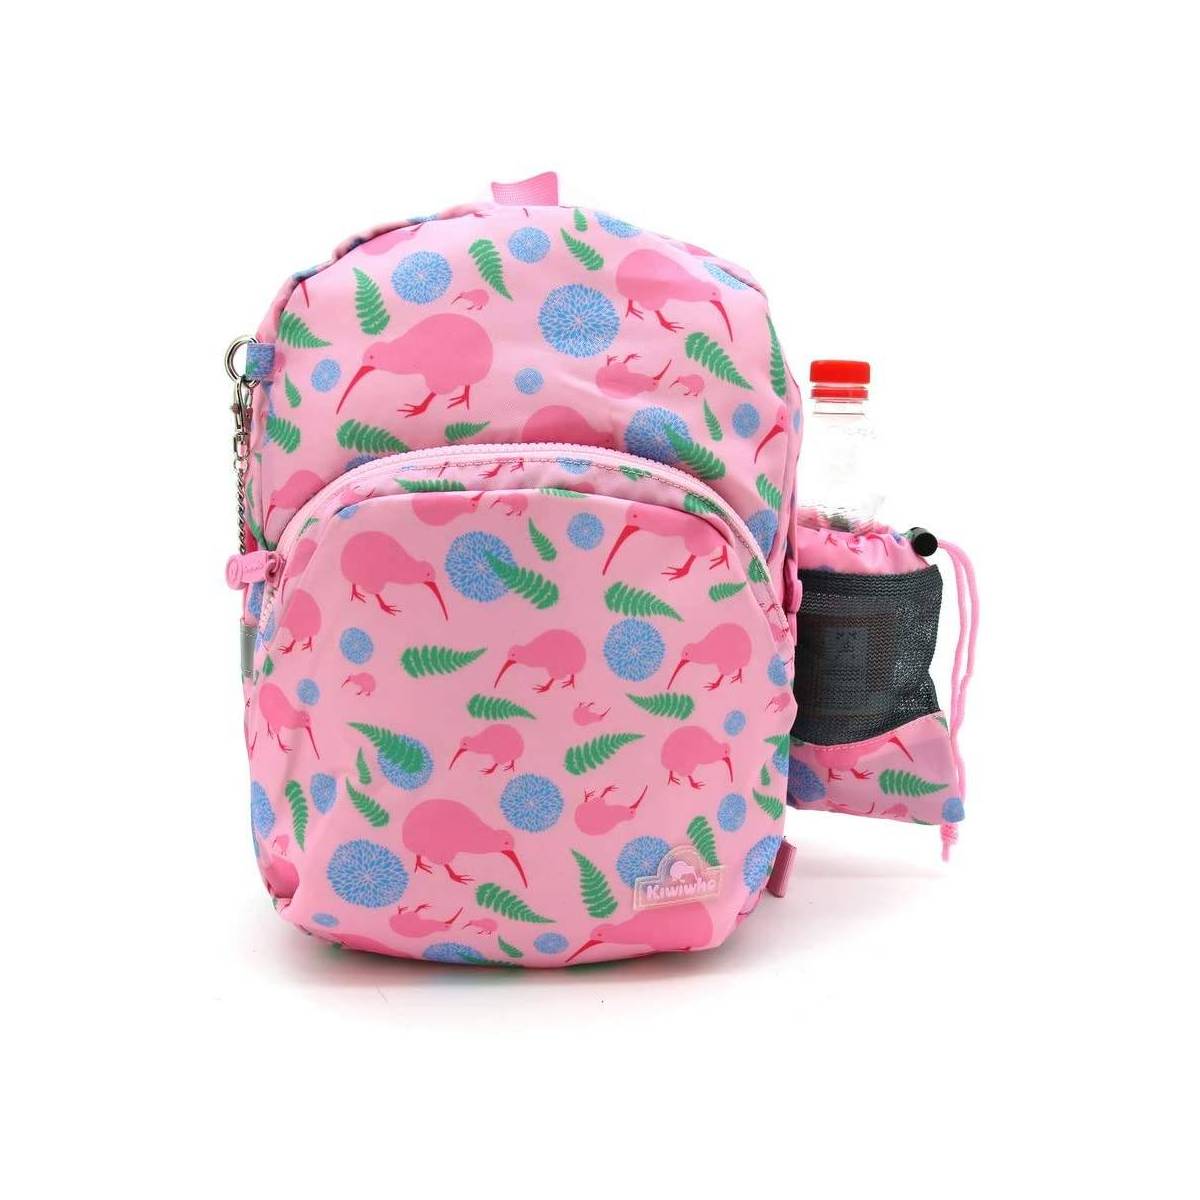 Kiwiwho Kind Backpack Rosa